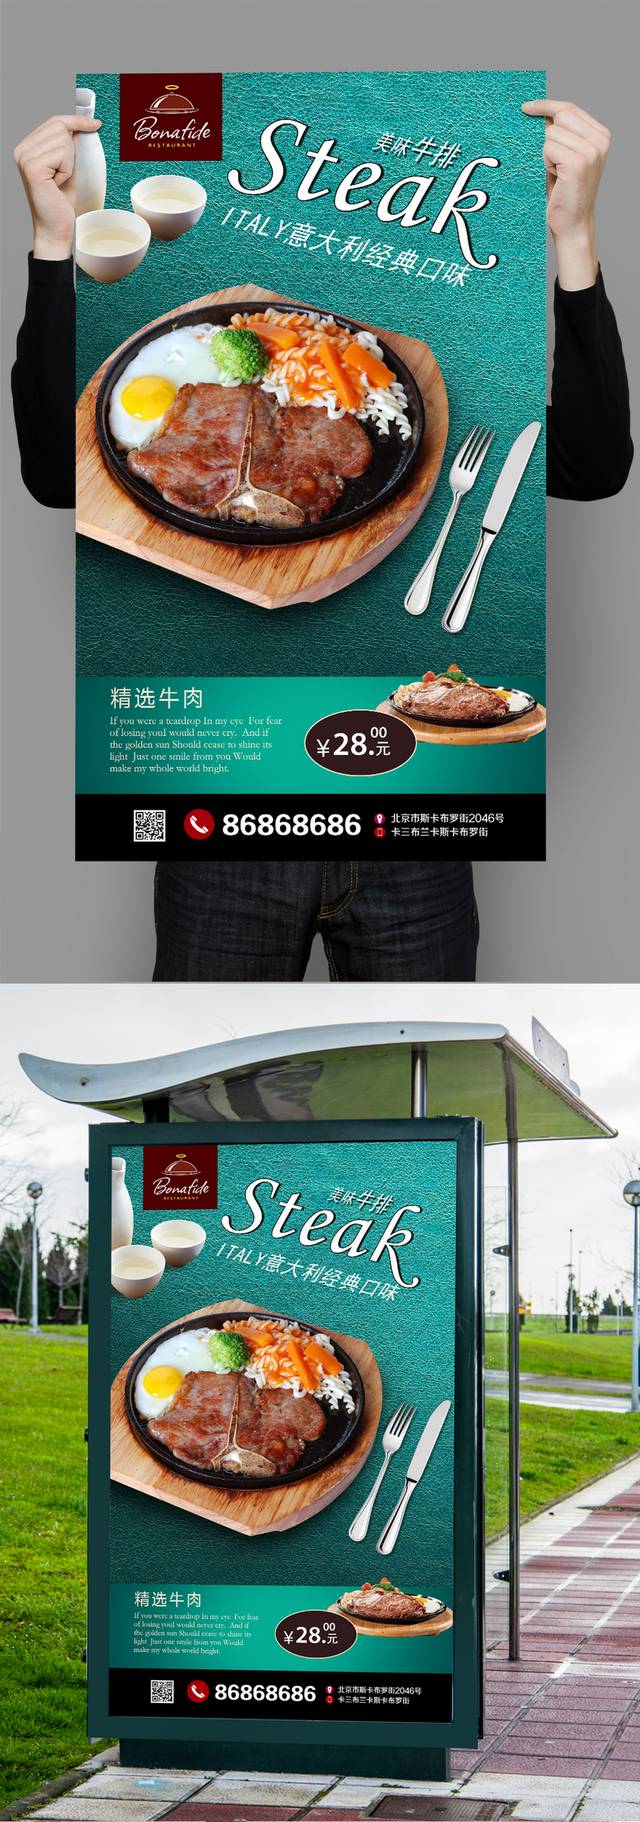 西餐美食牛排促销海报设计